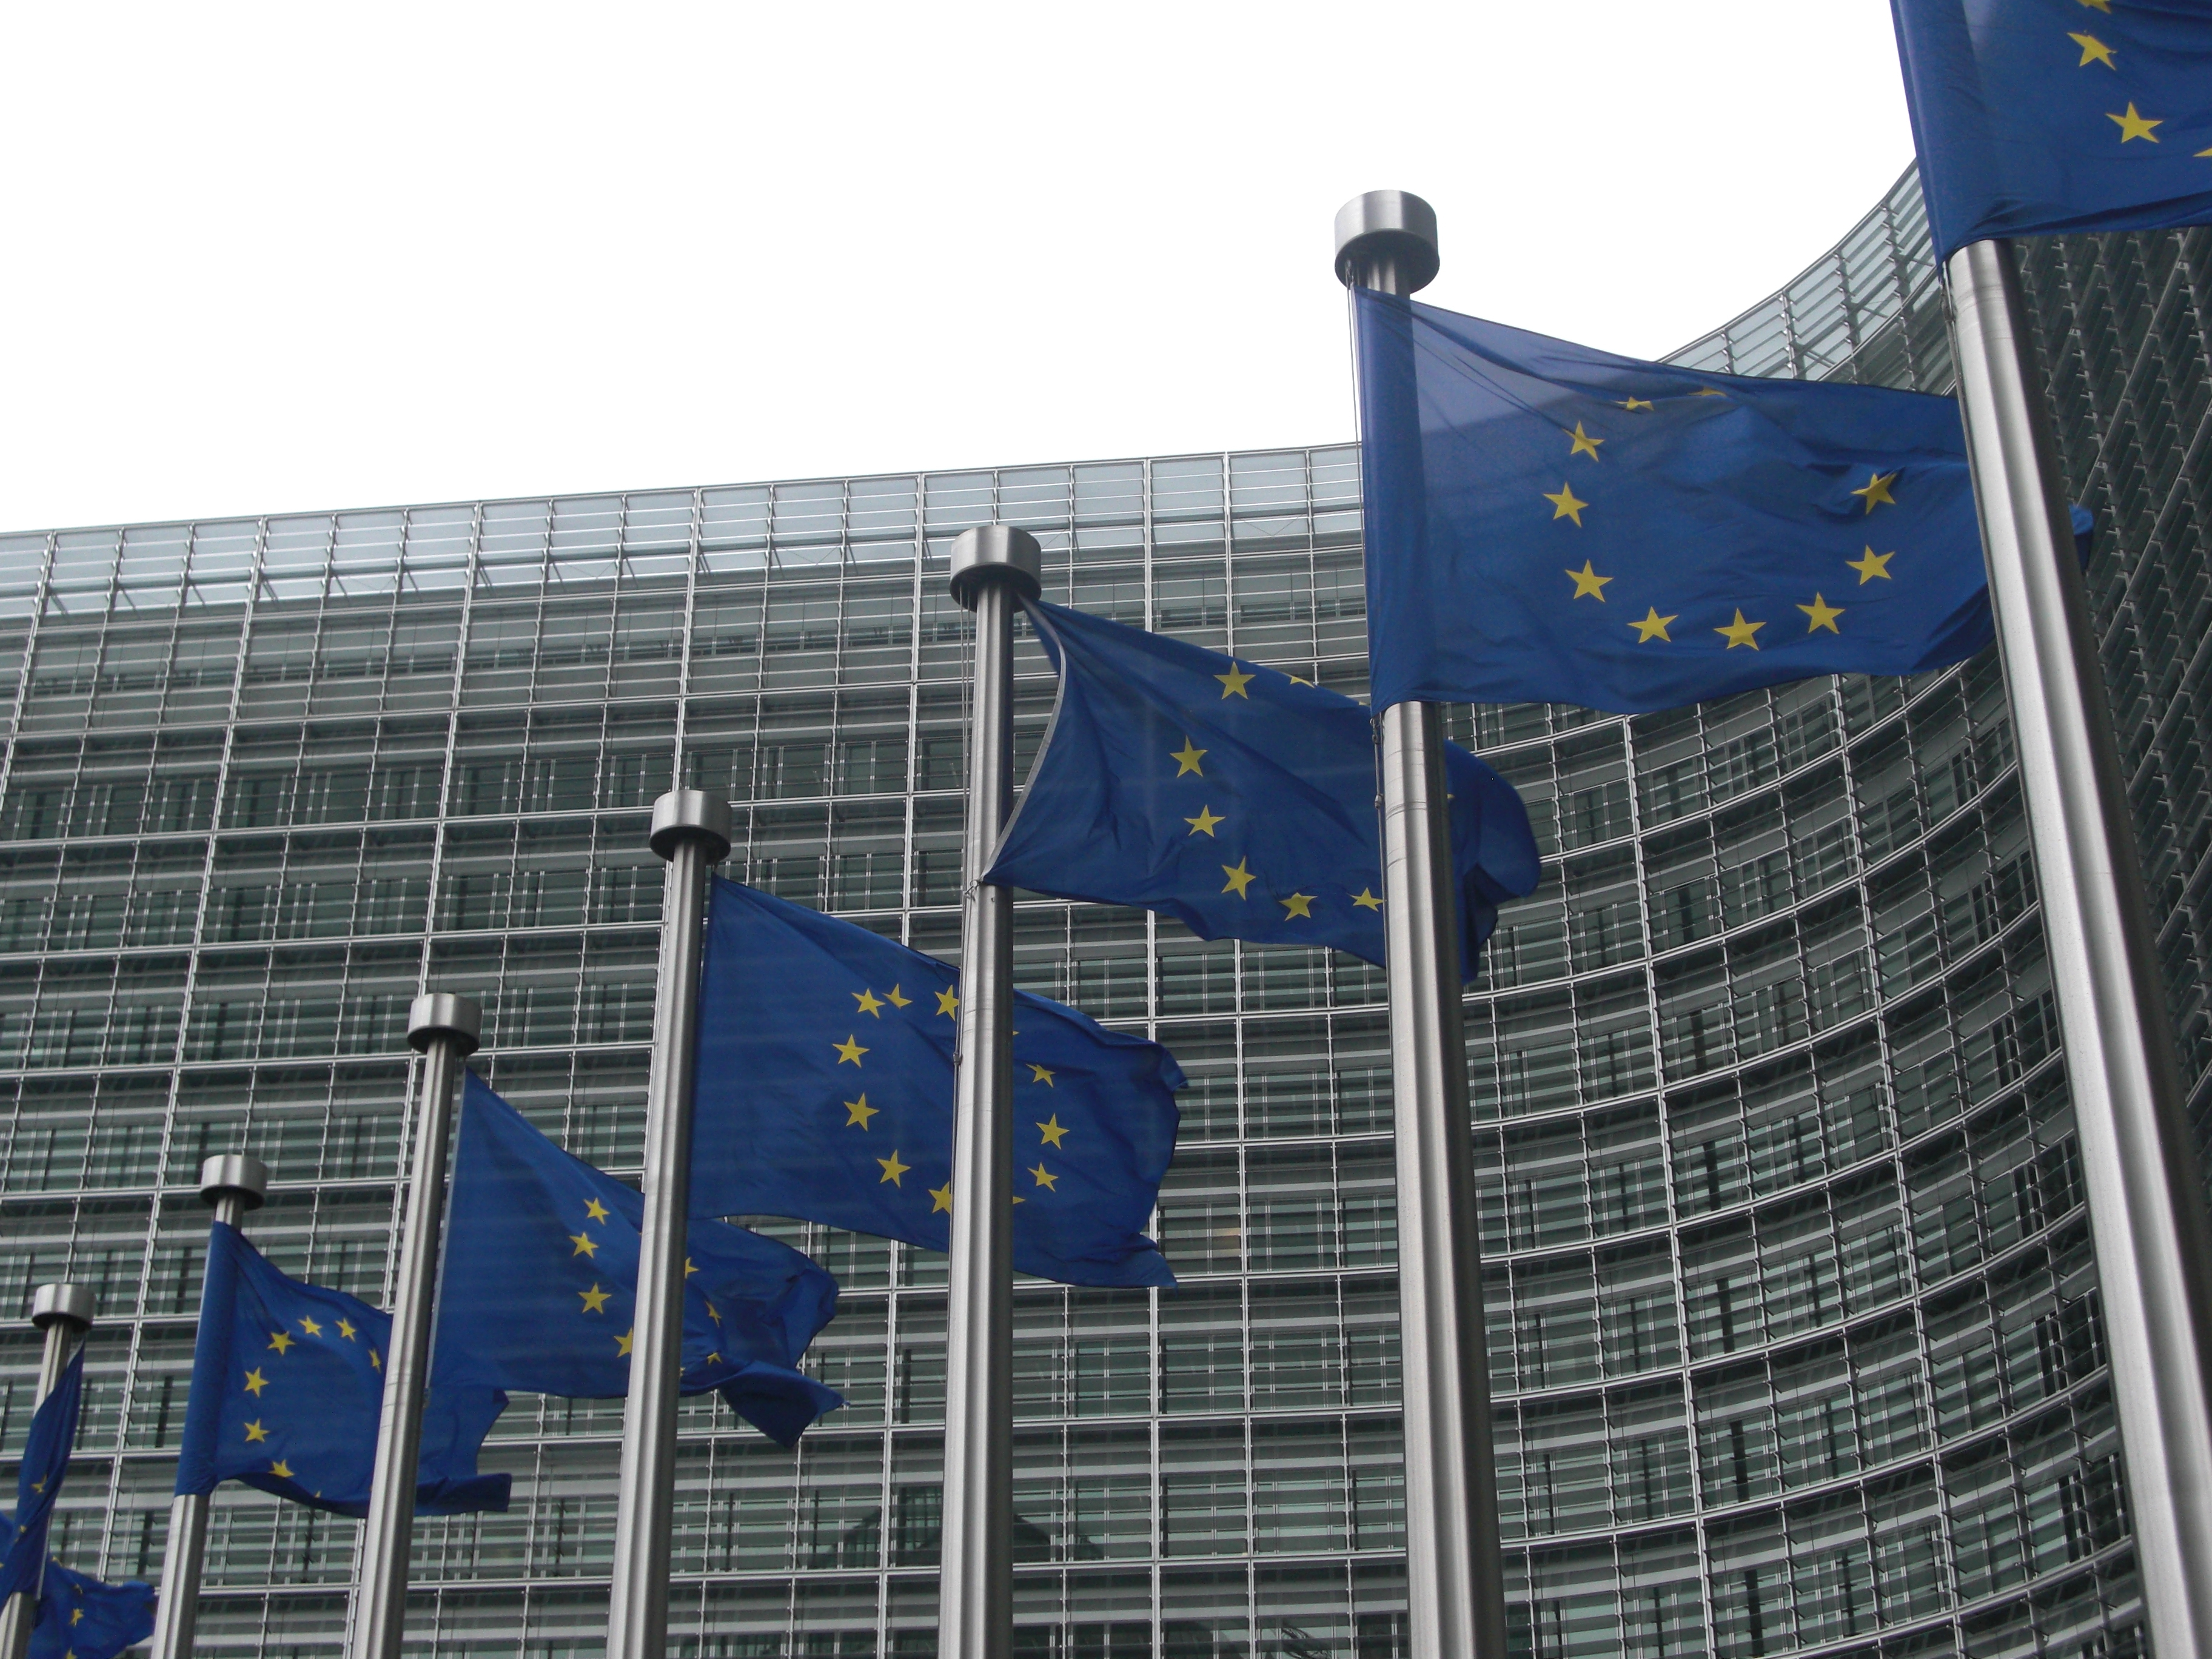 Η ΕΕ ενέκρινε τη στήριξη έργων αστικής ανάπλασης σε Ελλάδα, Βουλγαρία, μέσω της πρωτοβουλίας “Jessica”